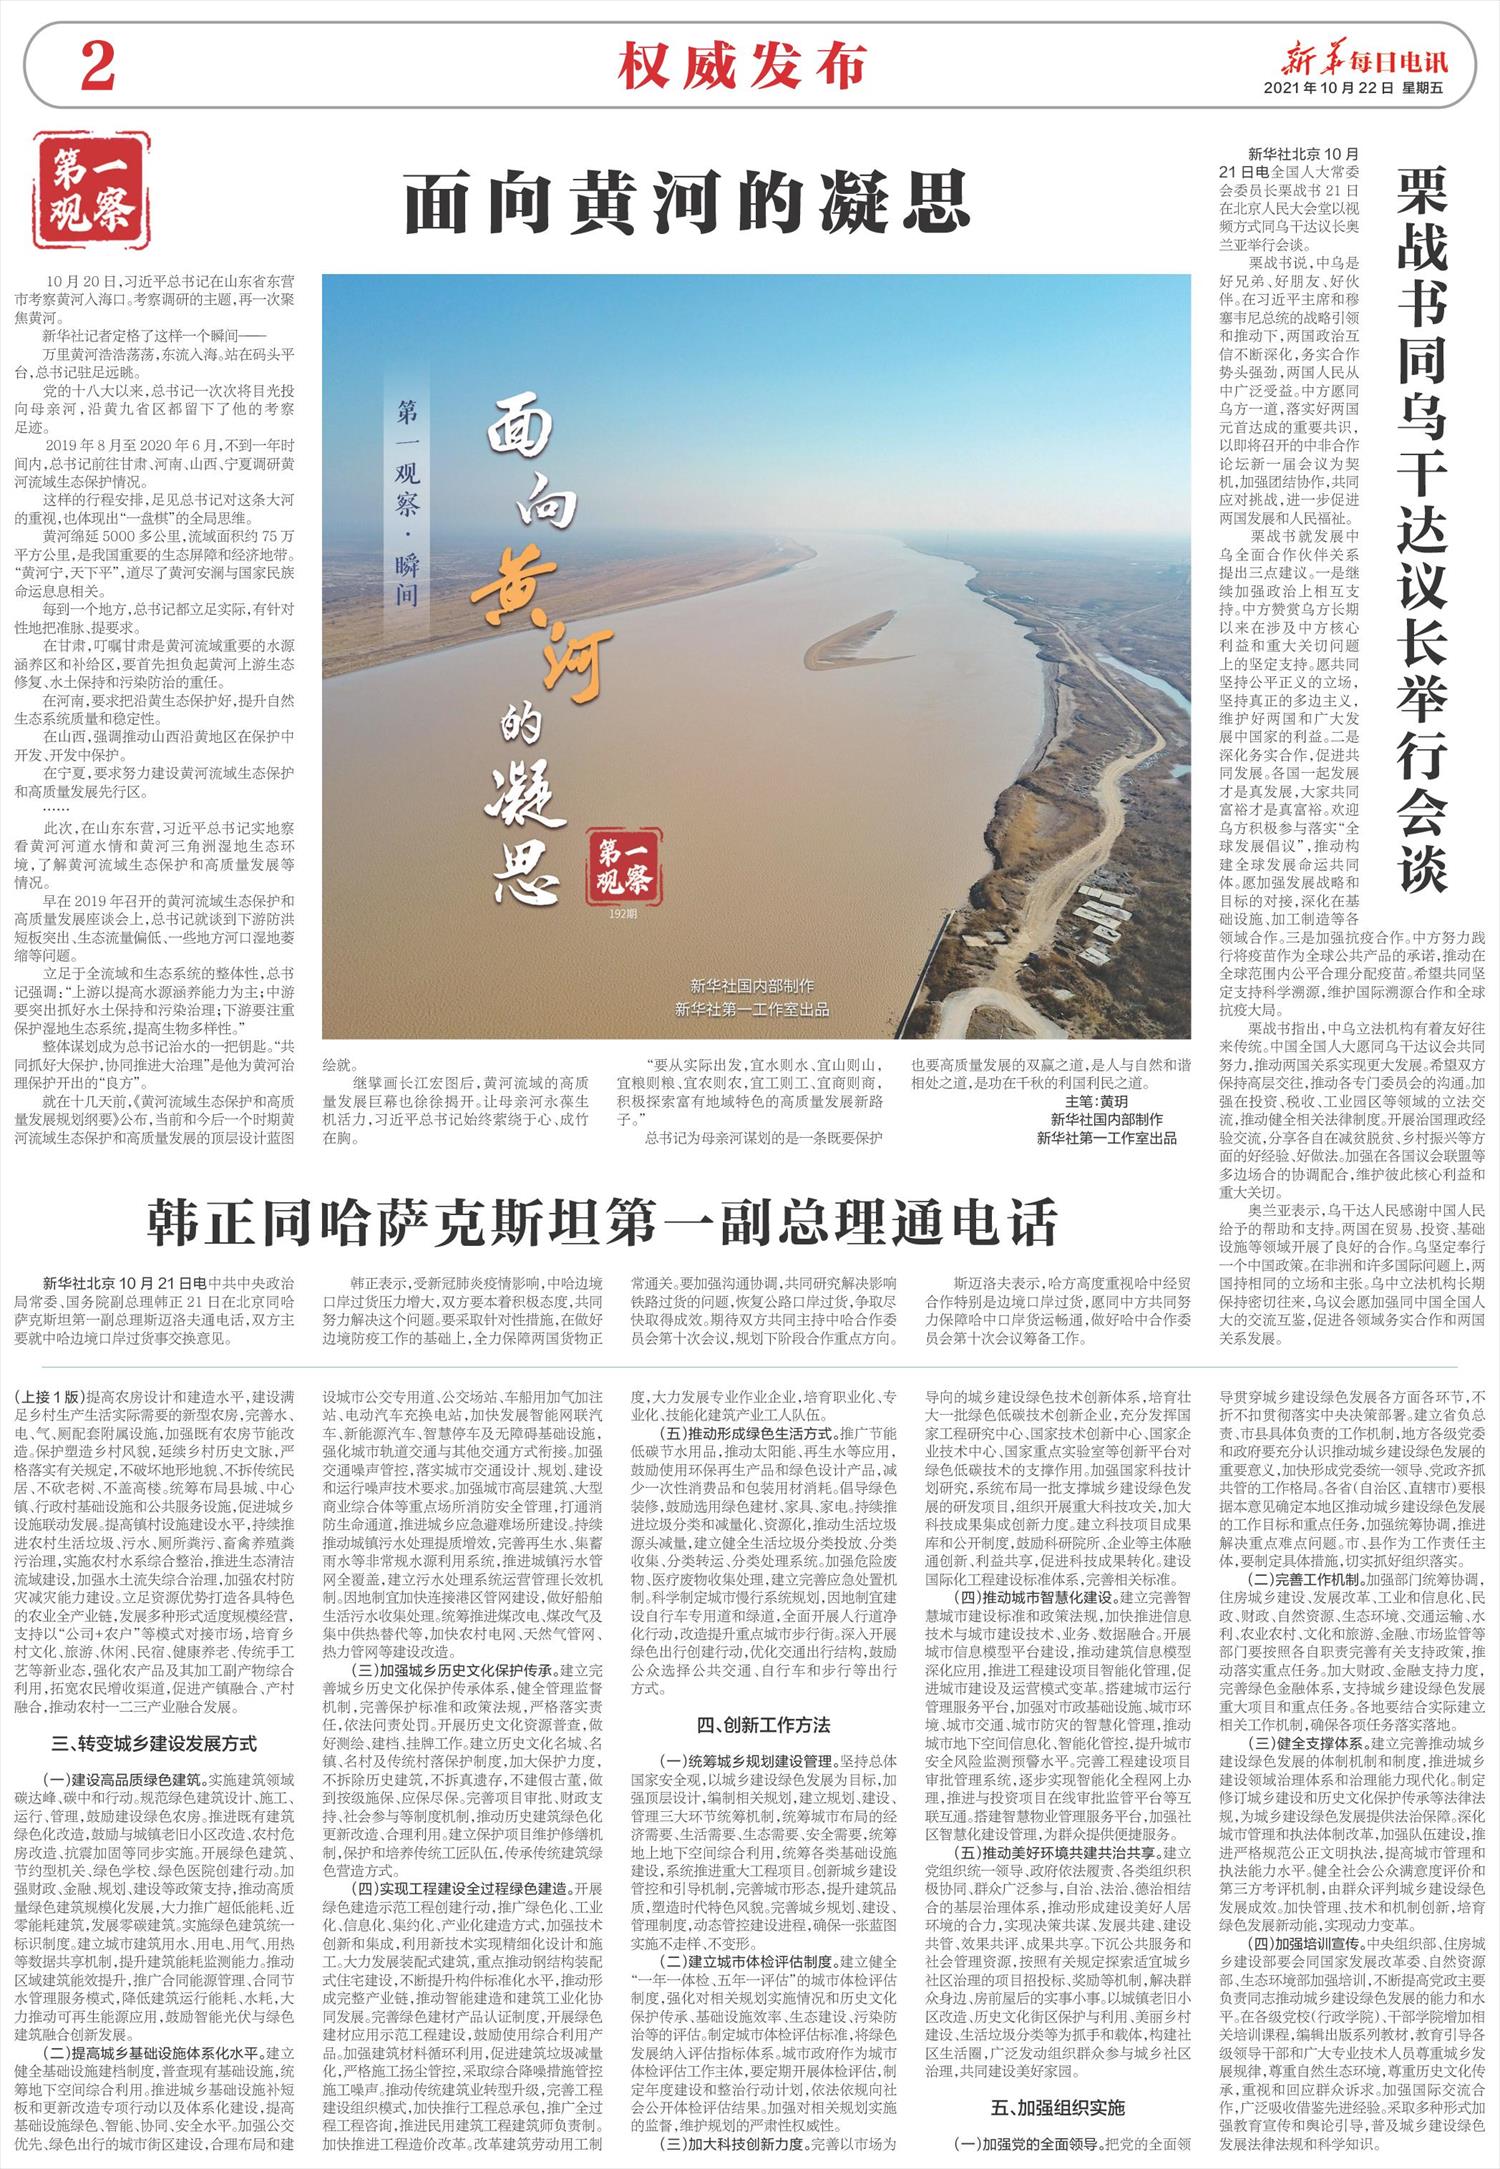 新华每日电讯-微报纸-2021年10月22日